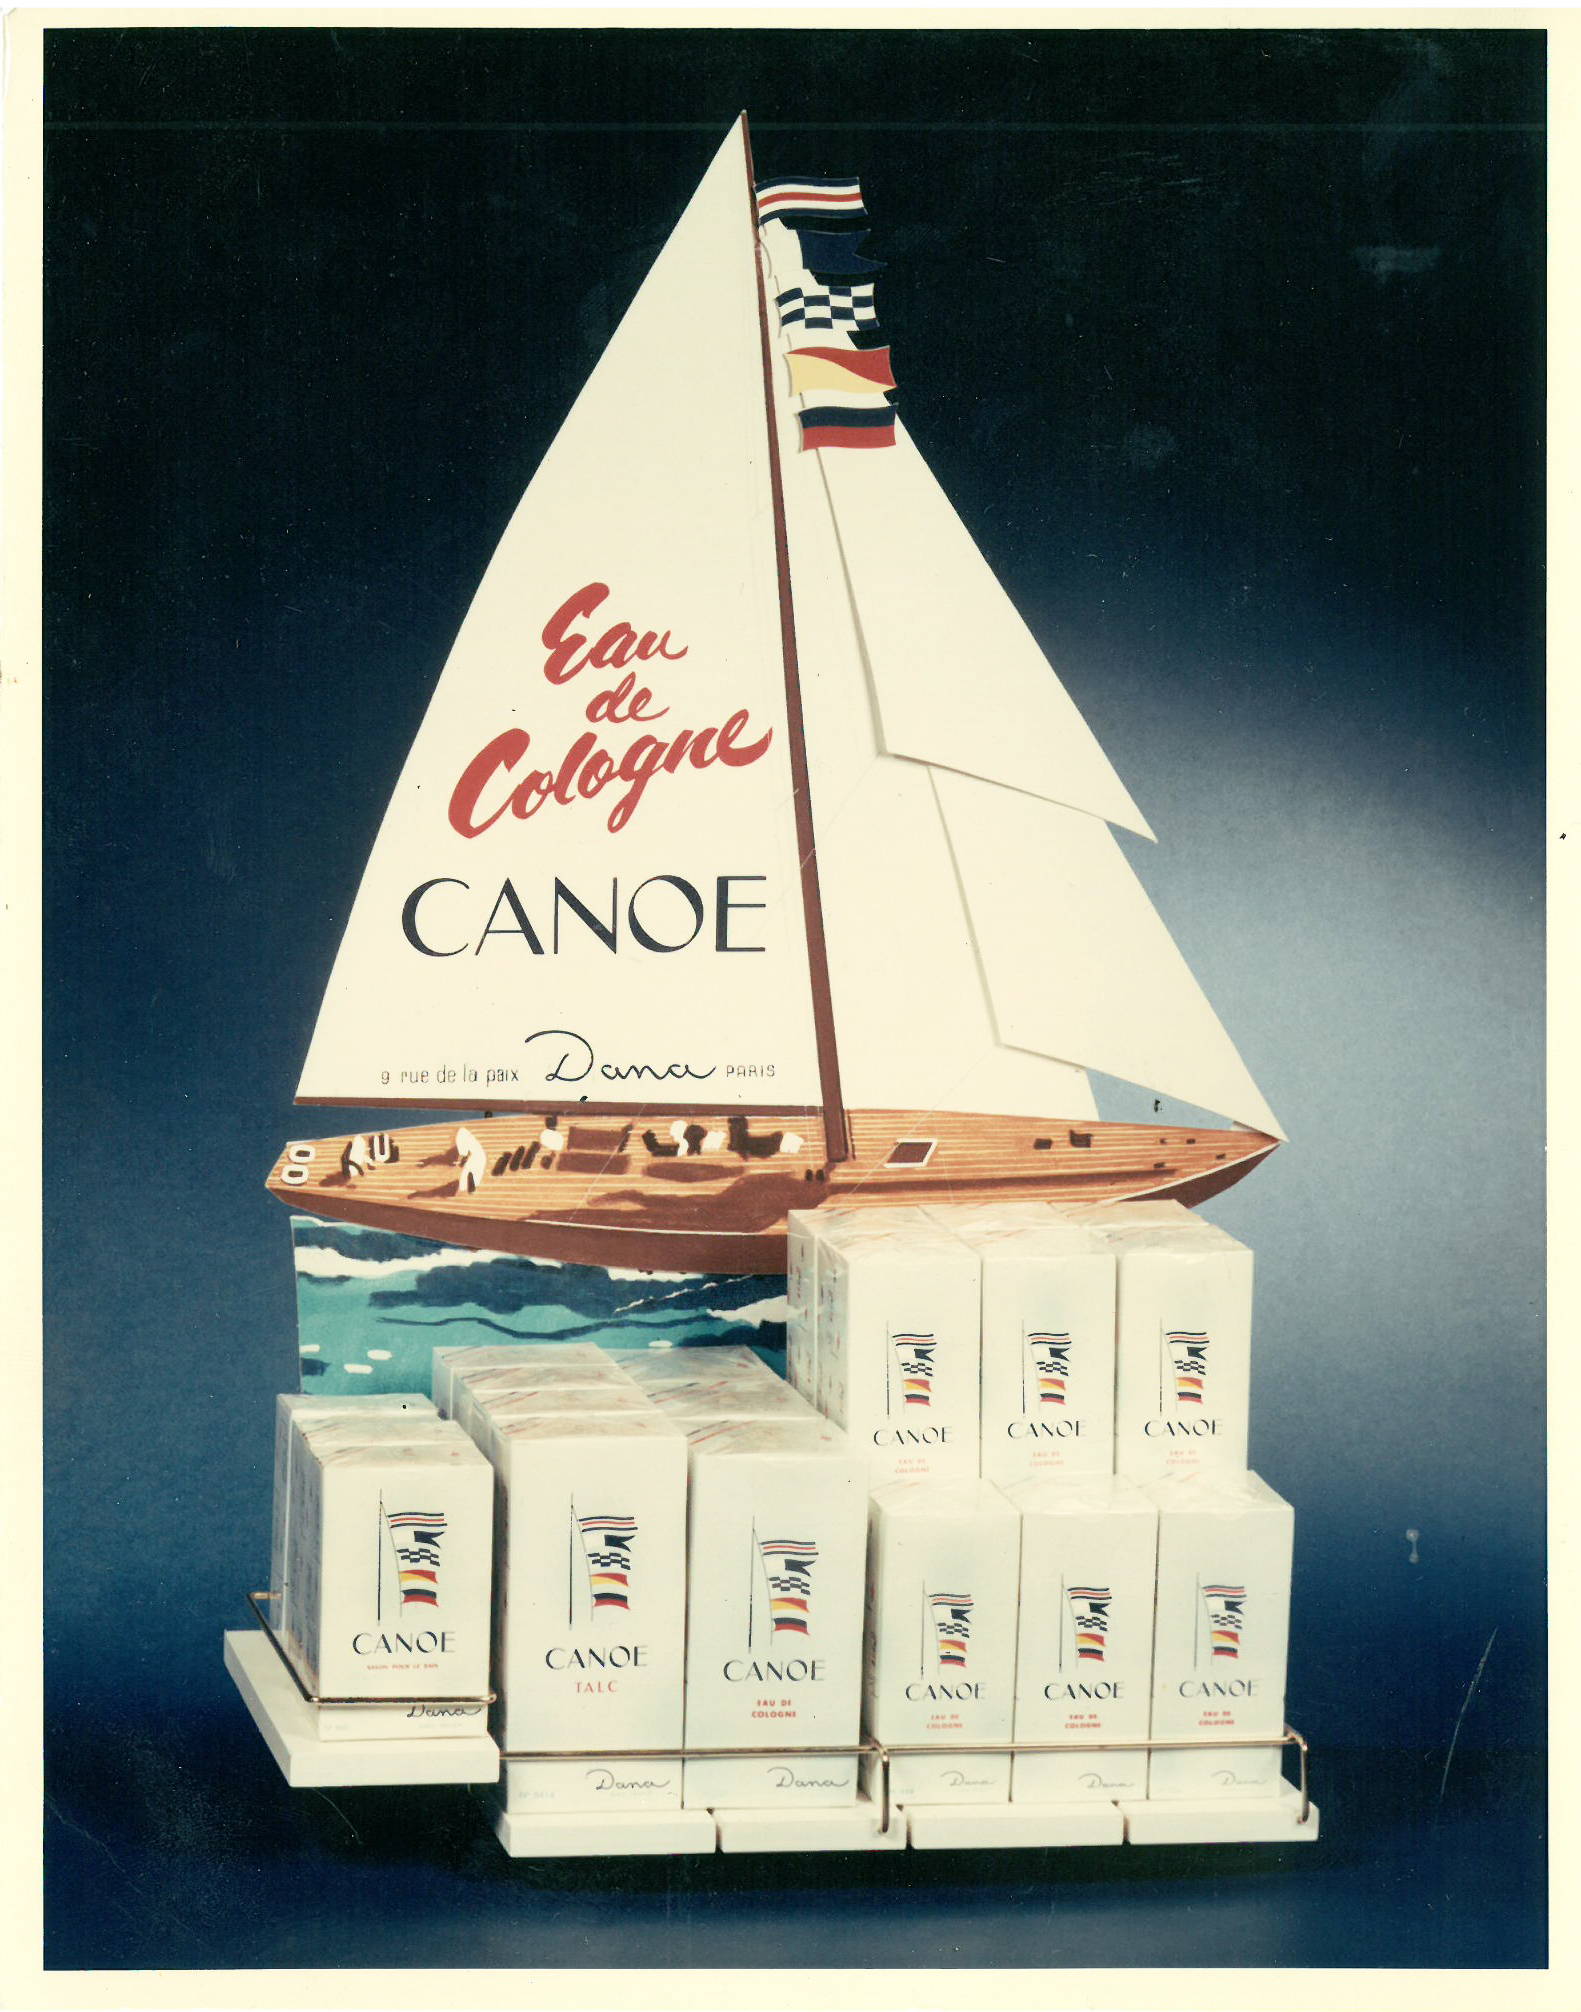 Vintage ad for Canoe eau de toilette with sailboat replica.